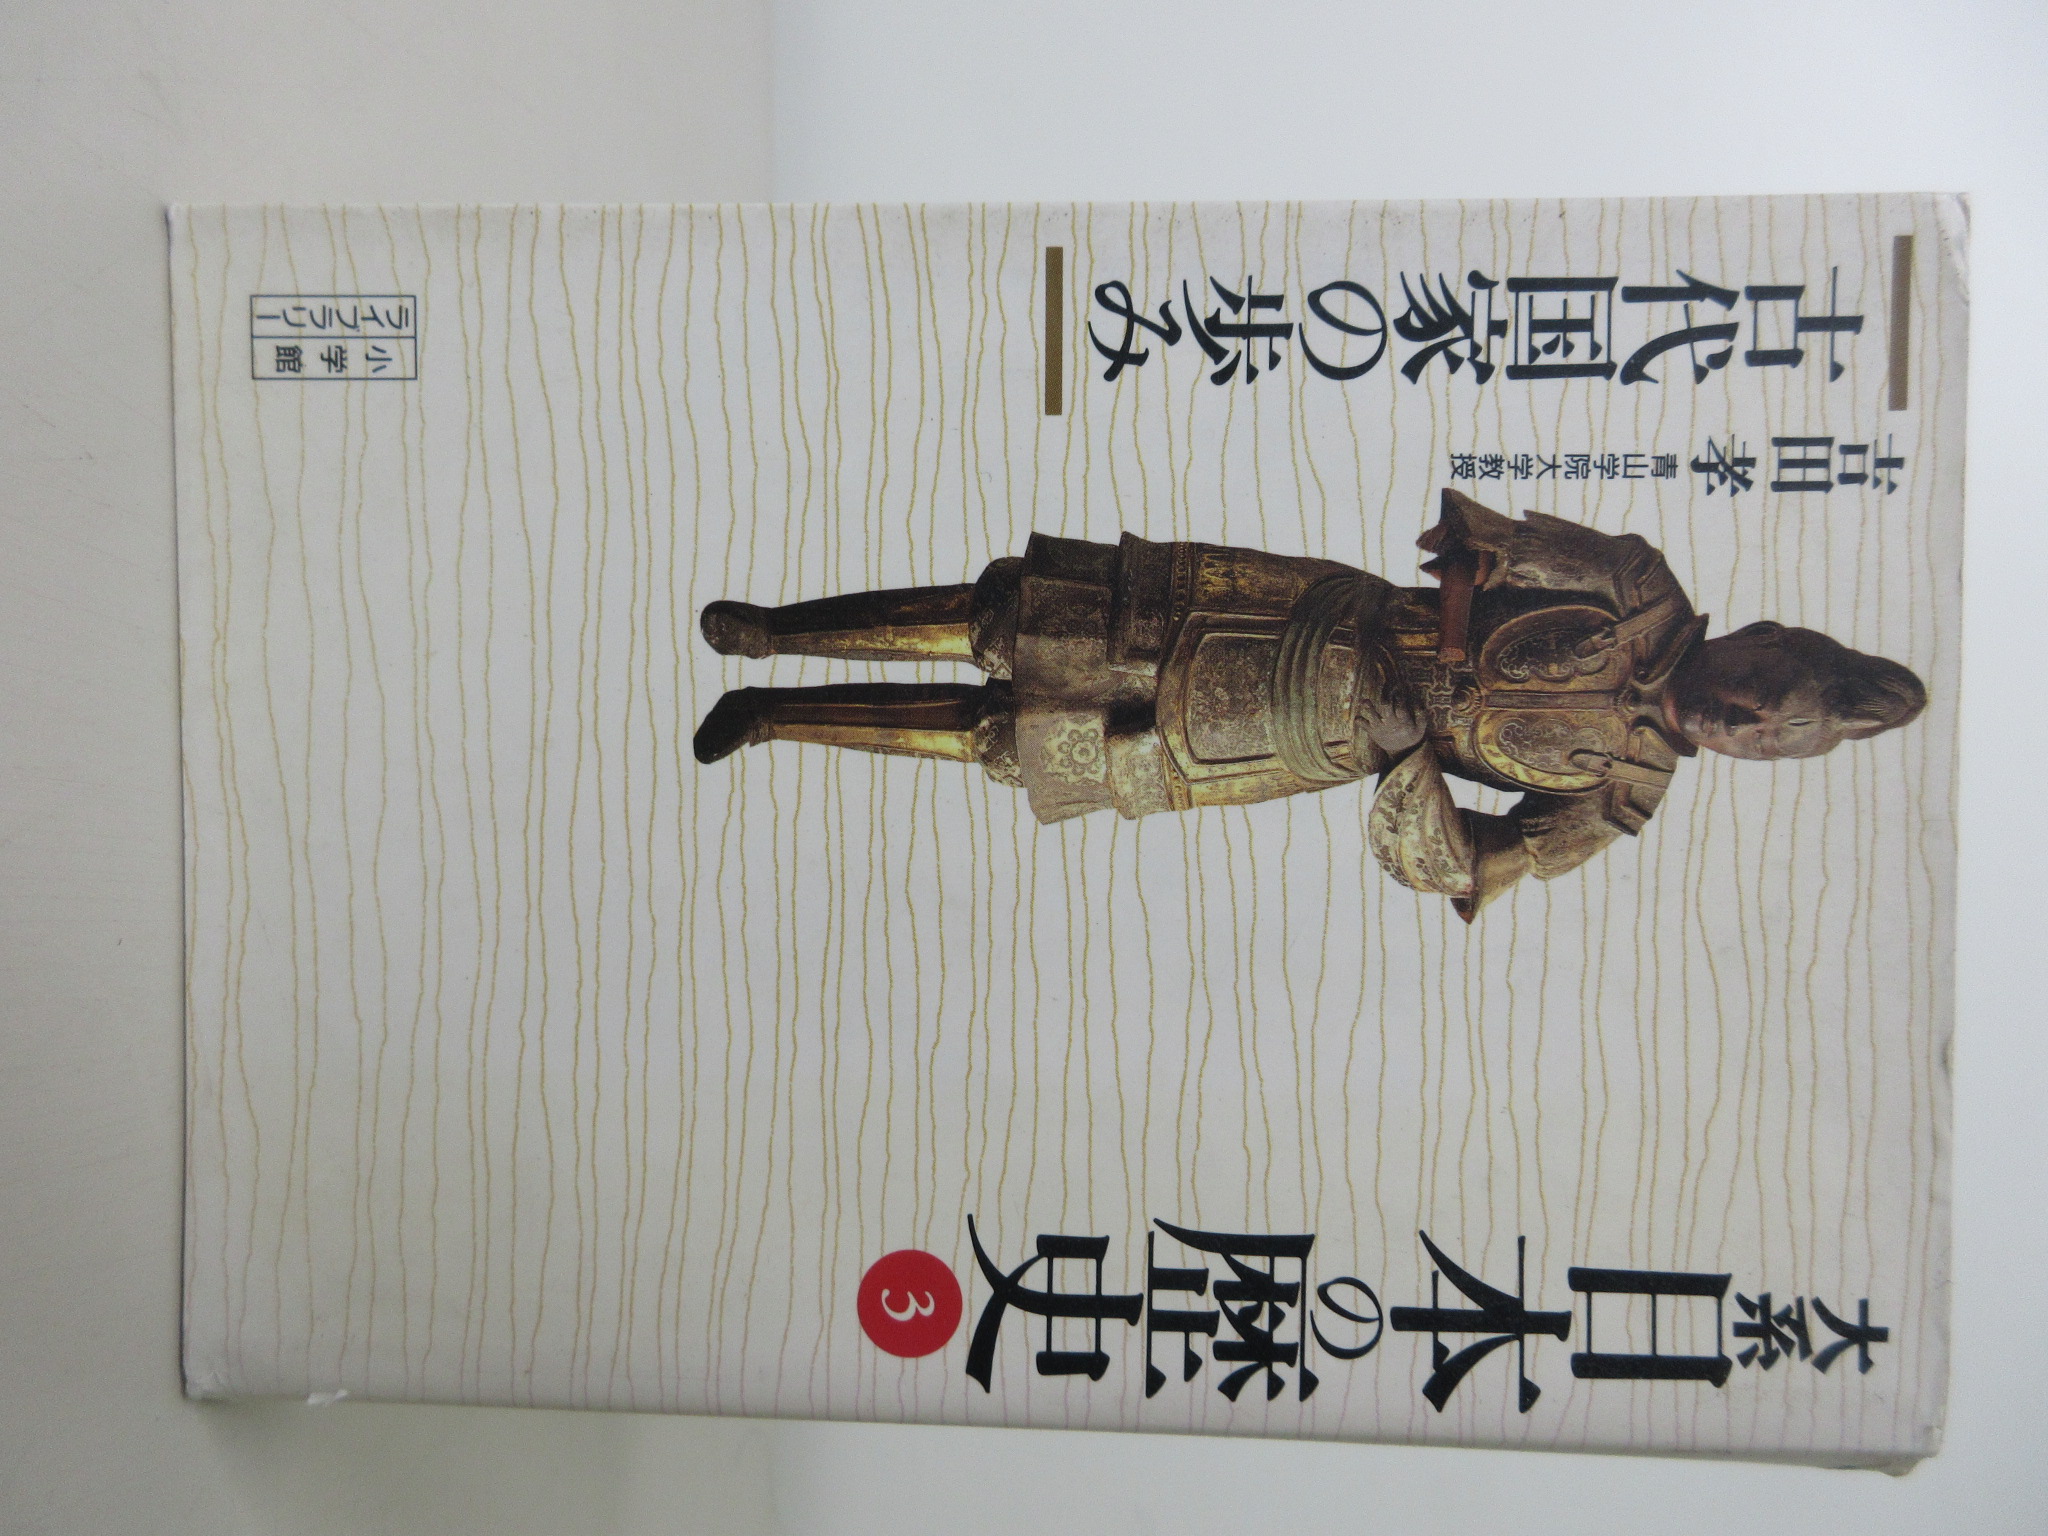 大系 日本の歴史〈3〉古代国家の歩み (小学館ライブラリー)[吉田 孝](ISBN:9784094610031)